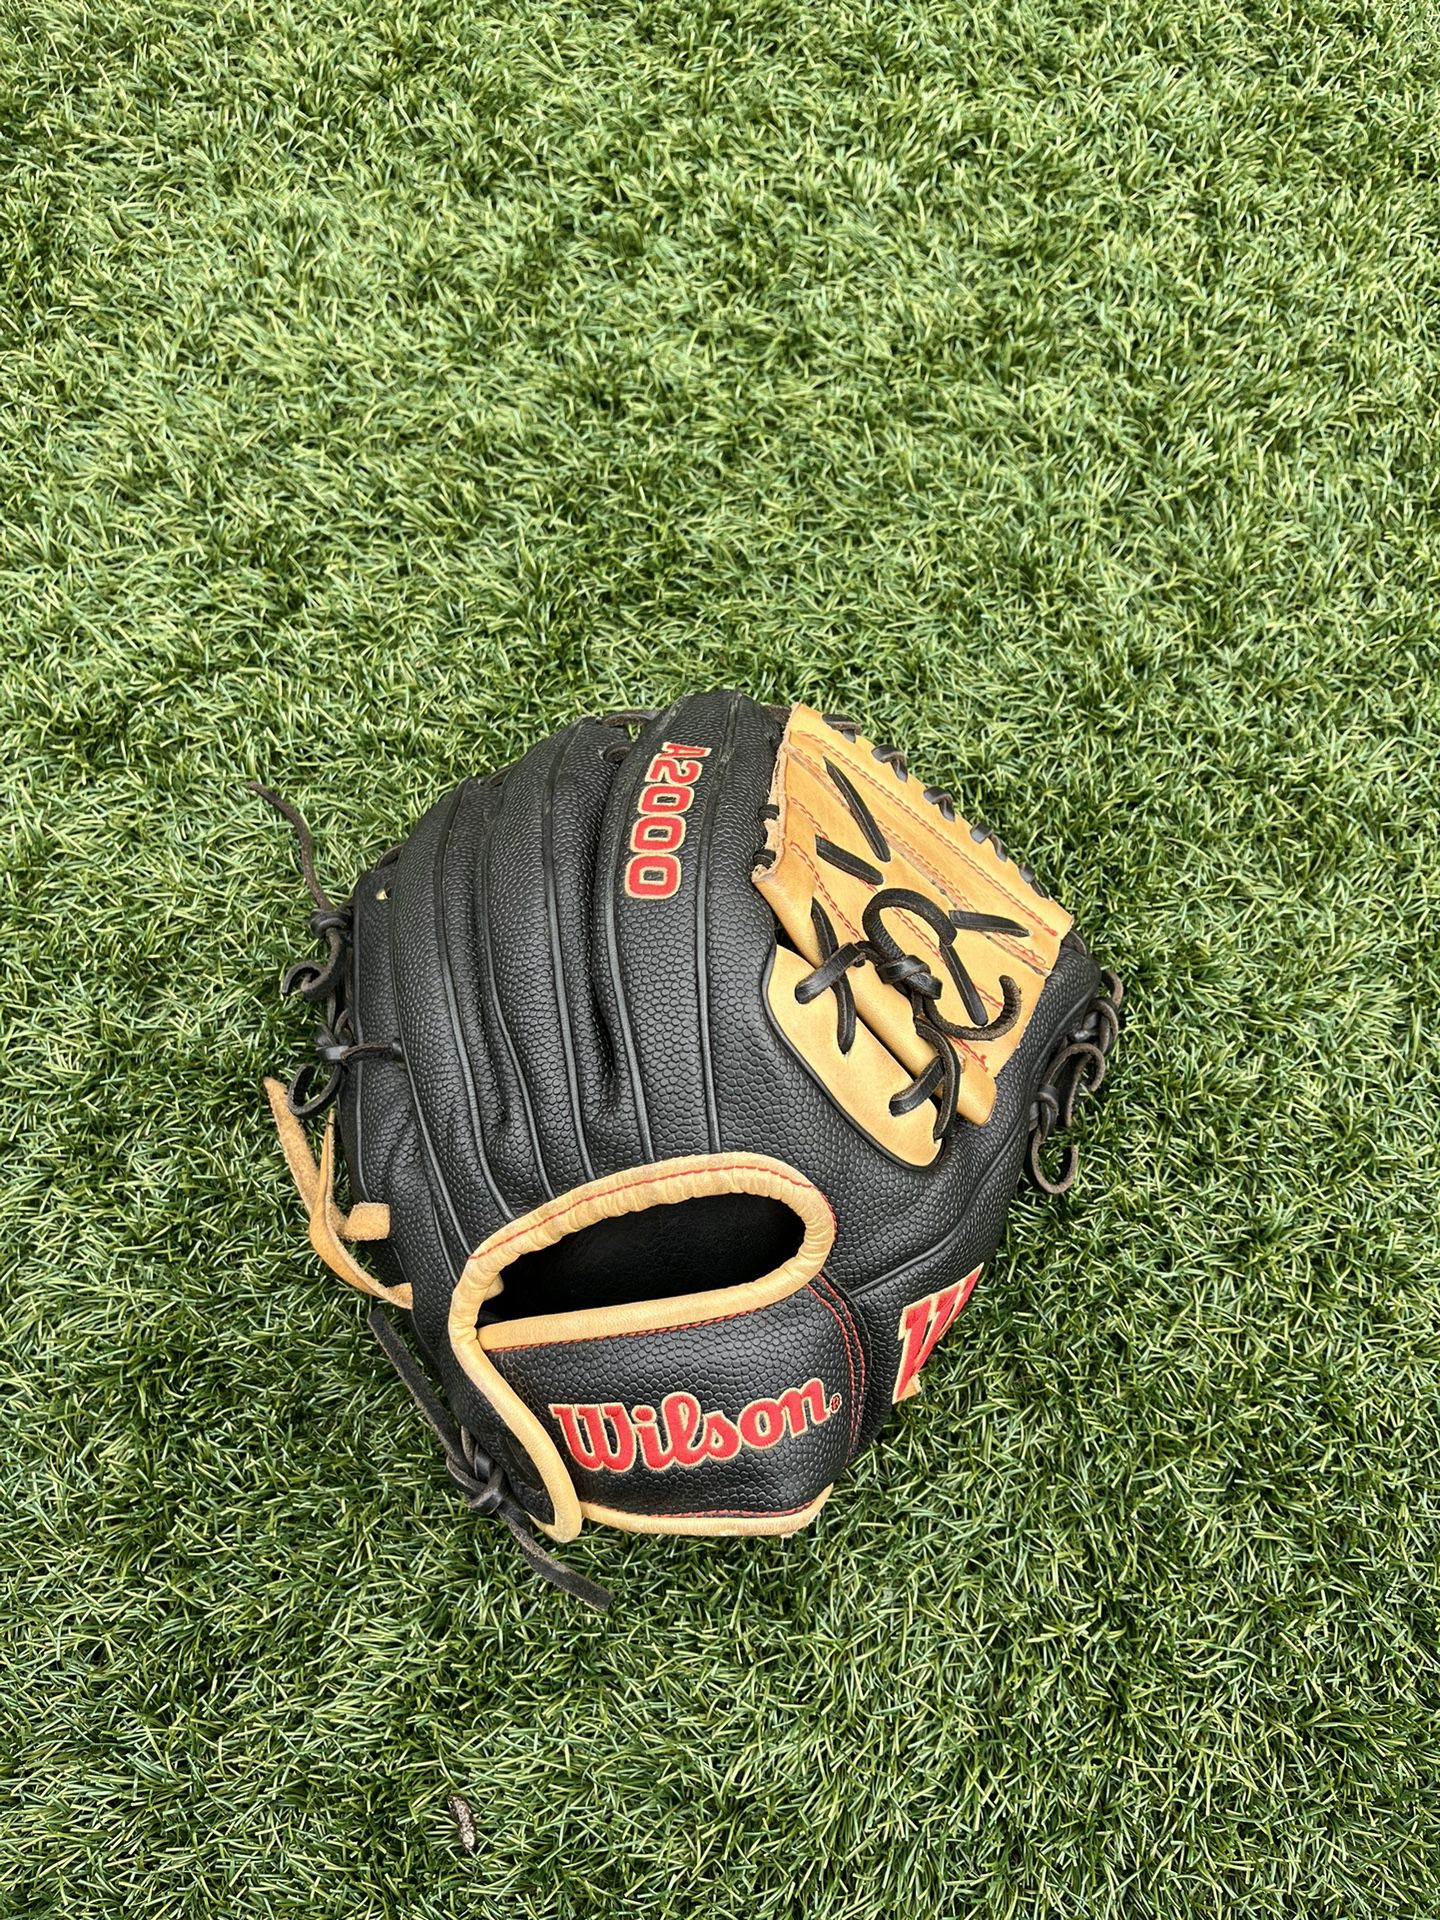 A2000 Wilson Baseball Glove 11 inch 